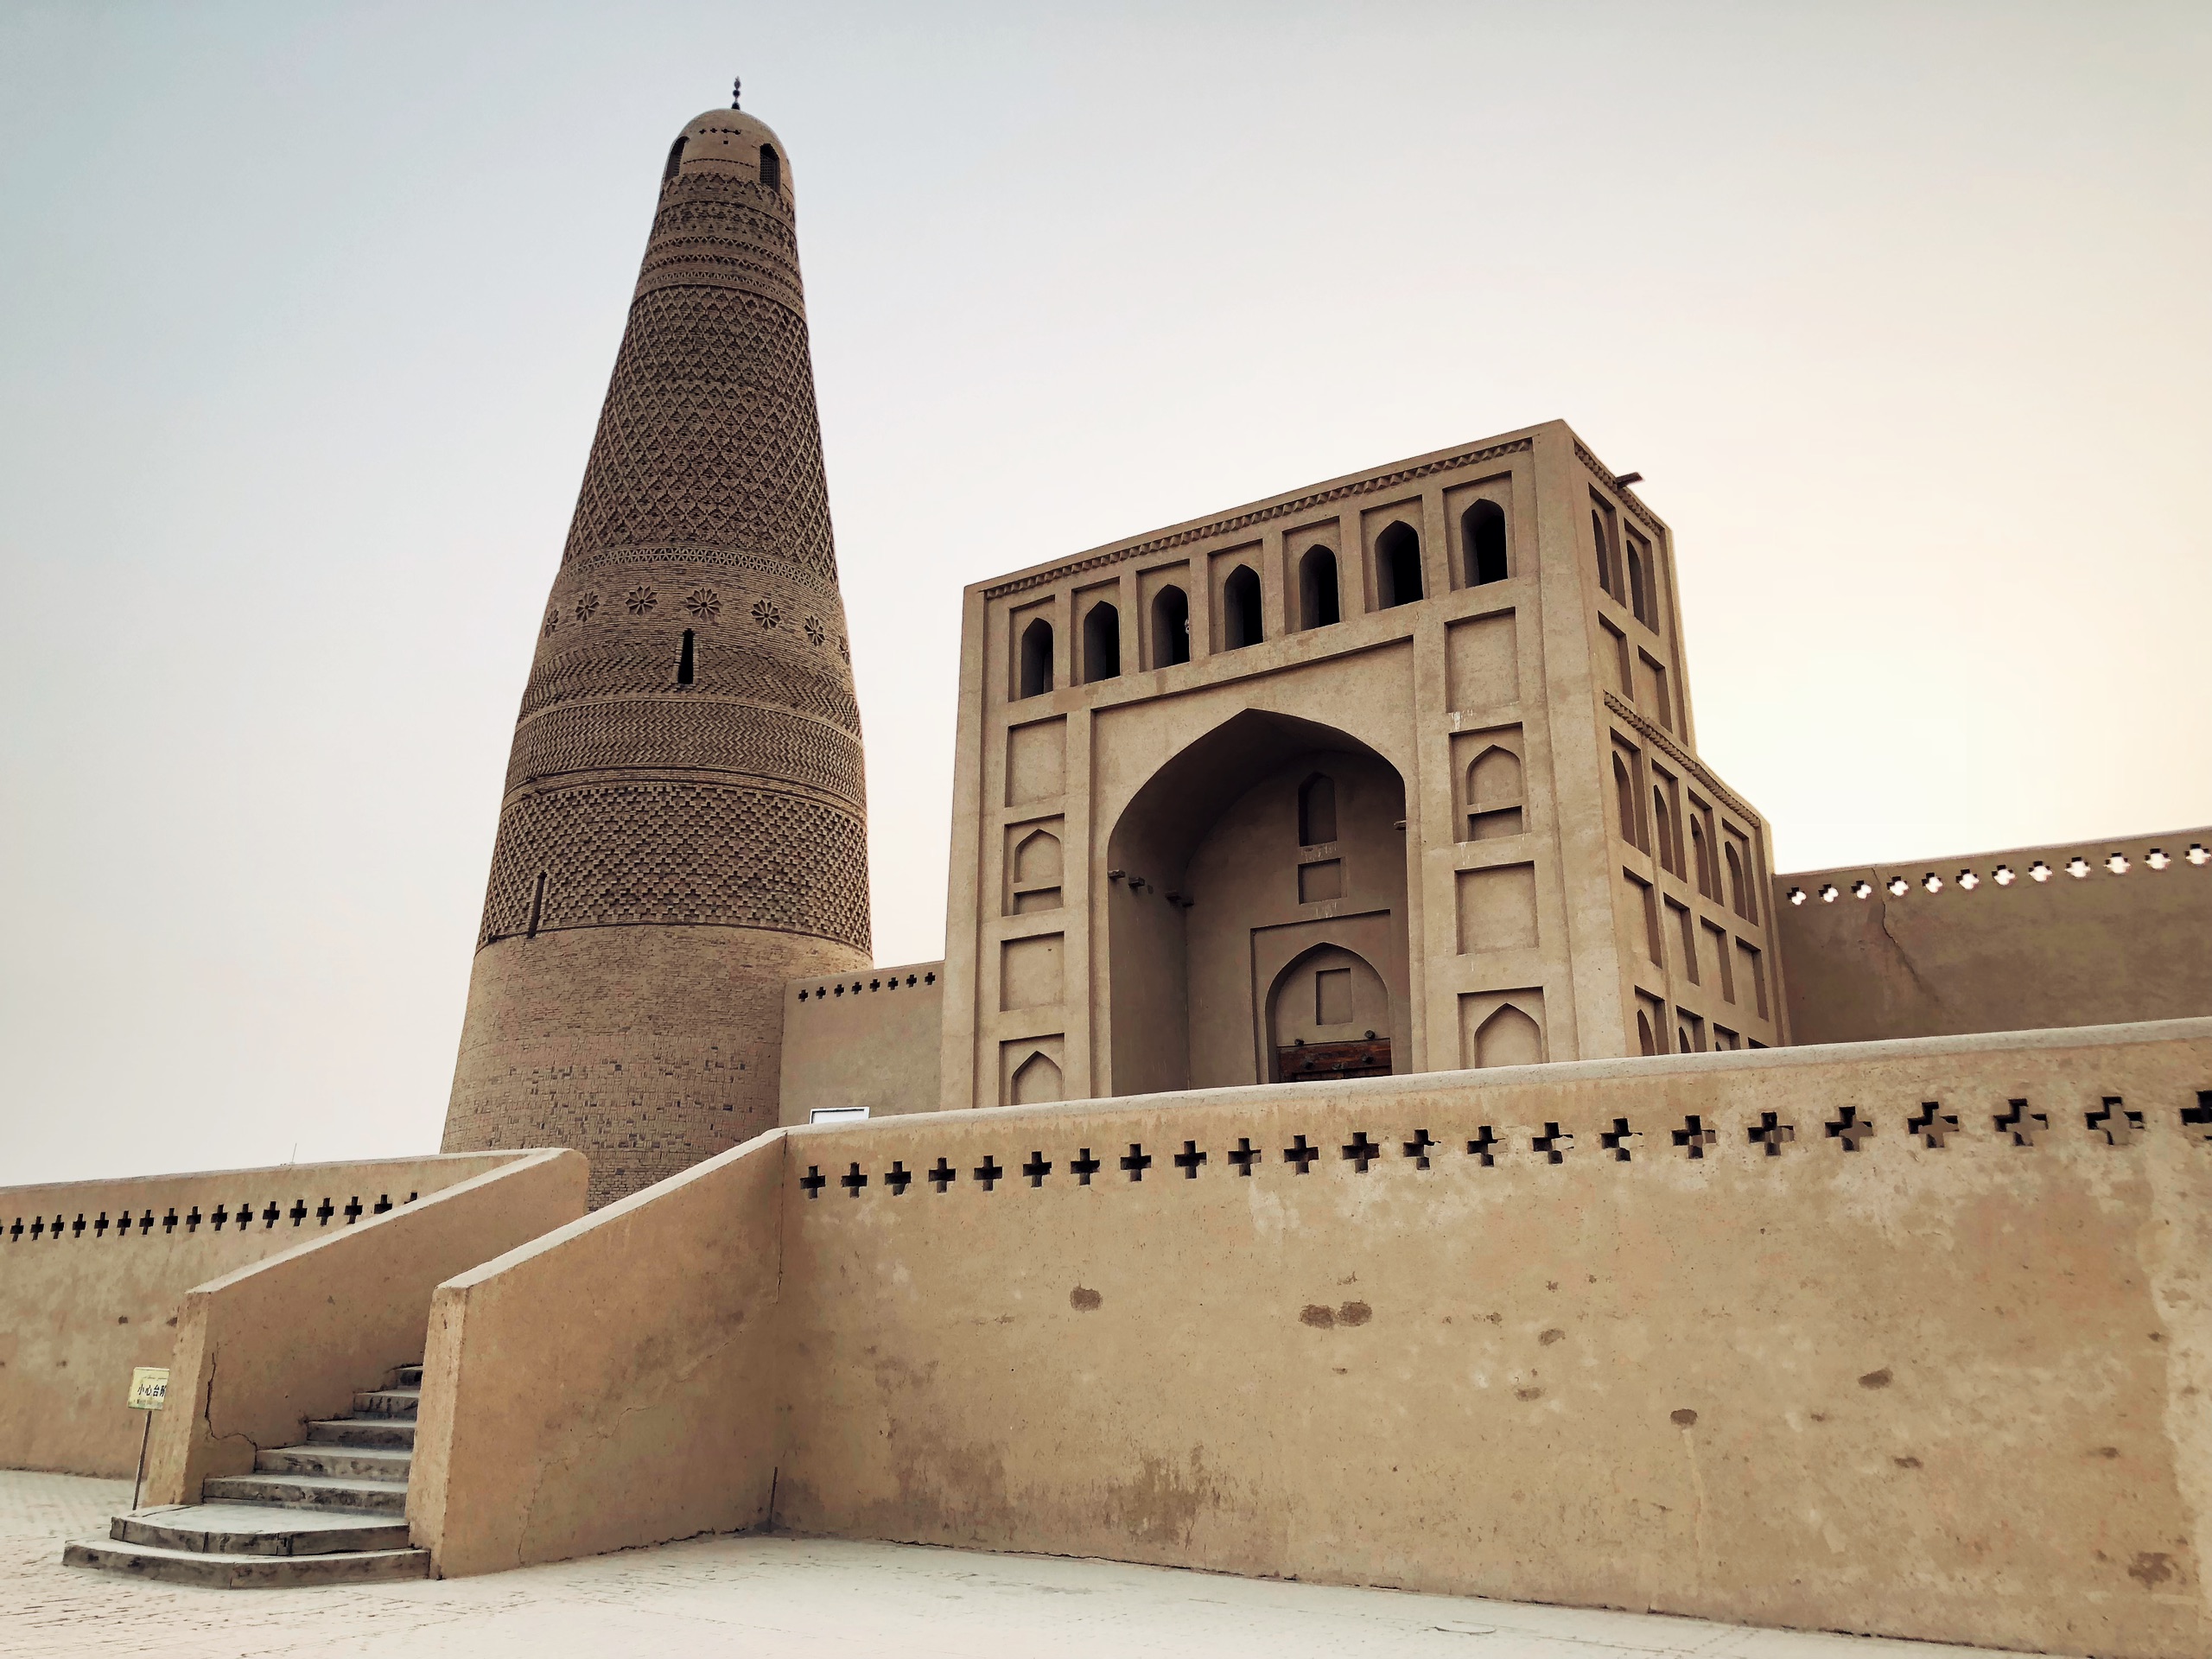 苏公塔礼拜寺，是吐鲁番市最大的清真寺。迄今已有230多年的历史